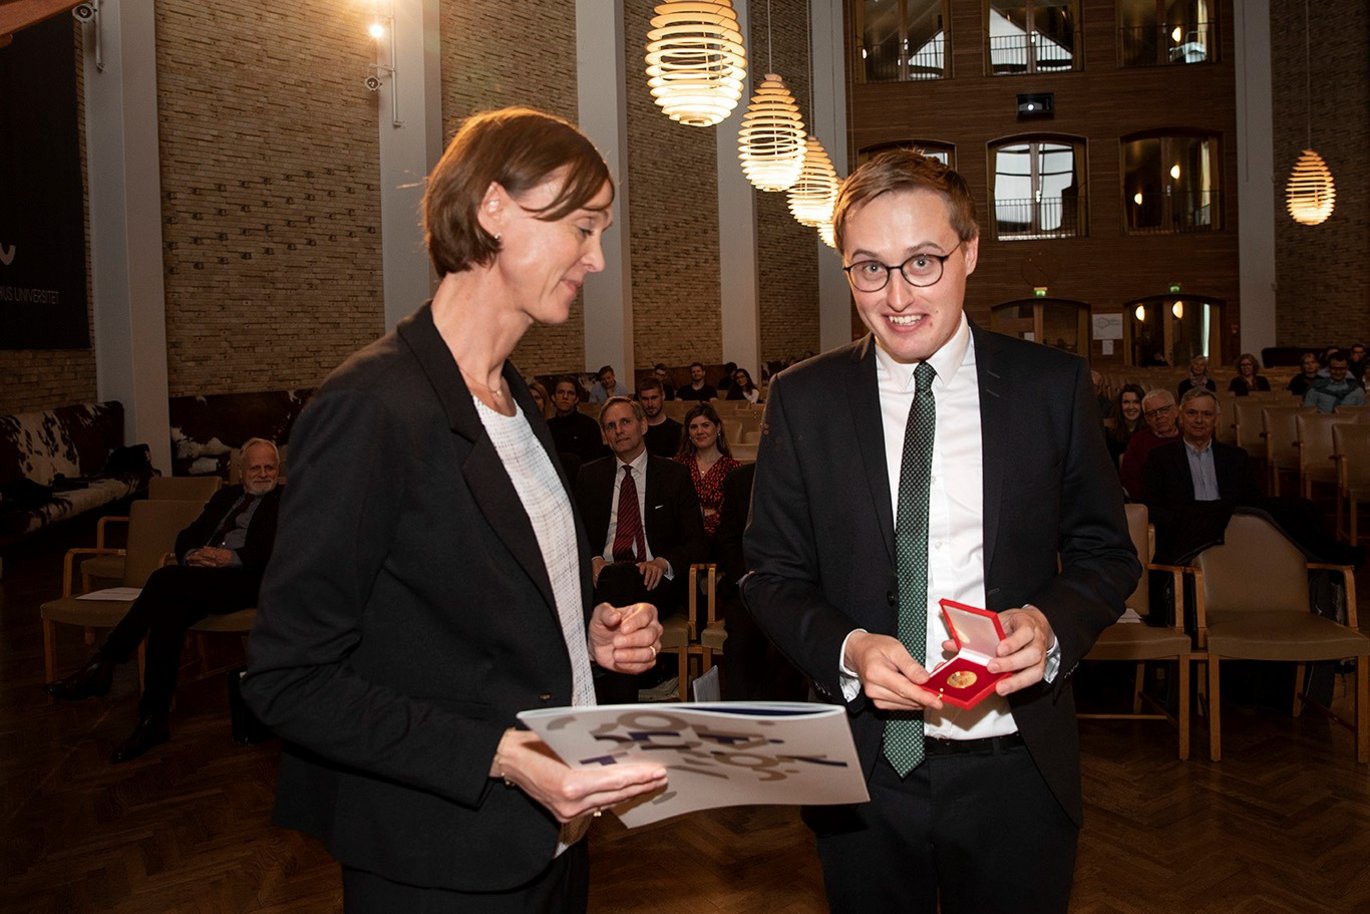 Andreas modtager her sin guldmedalje, som overrækkes af professor ved Juridisk Institut på Aarhus BSS, Hanne Søndergaard Birkmose. Foto: Lars Kruse